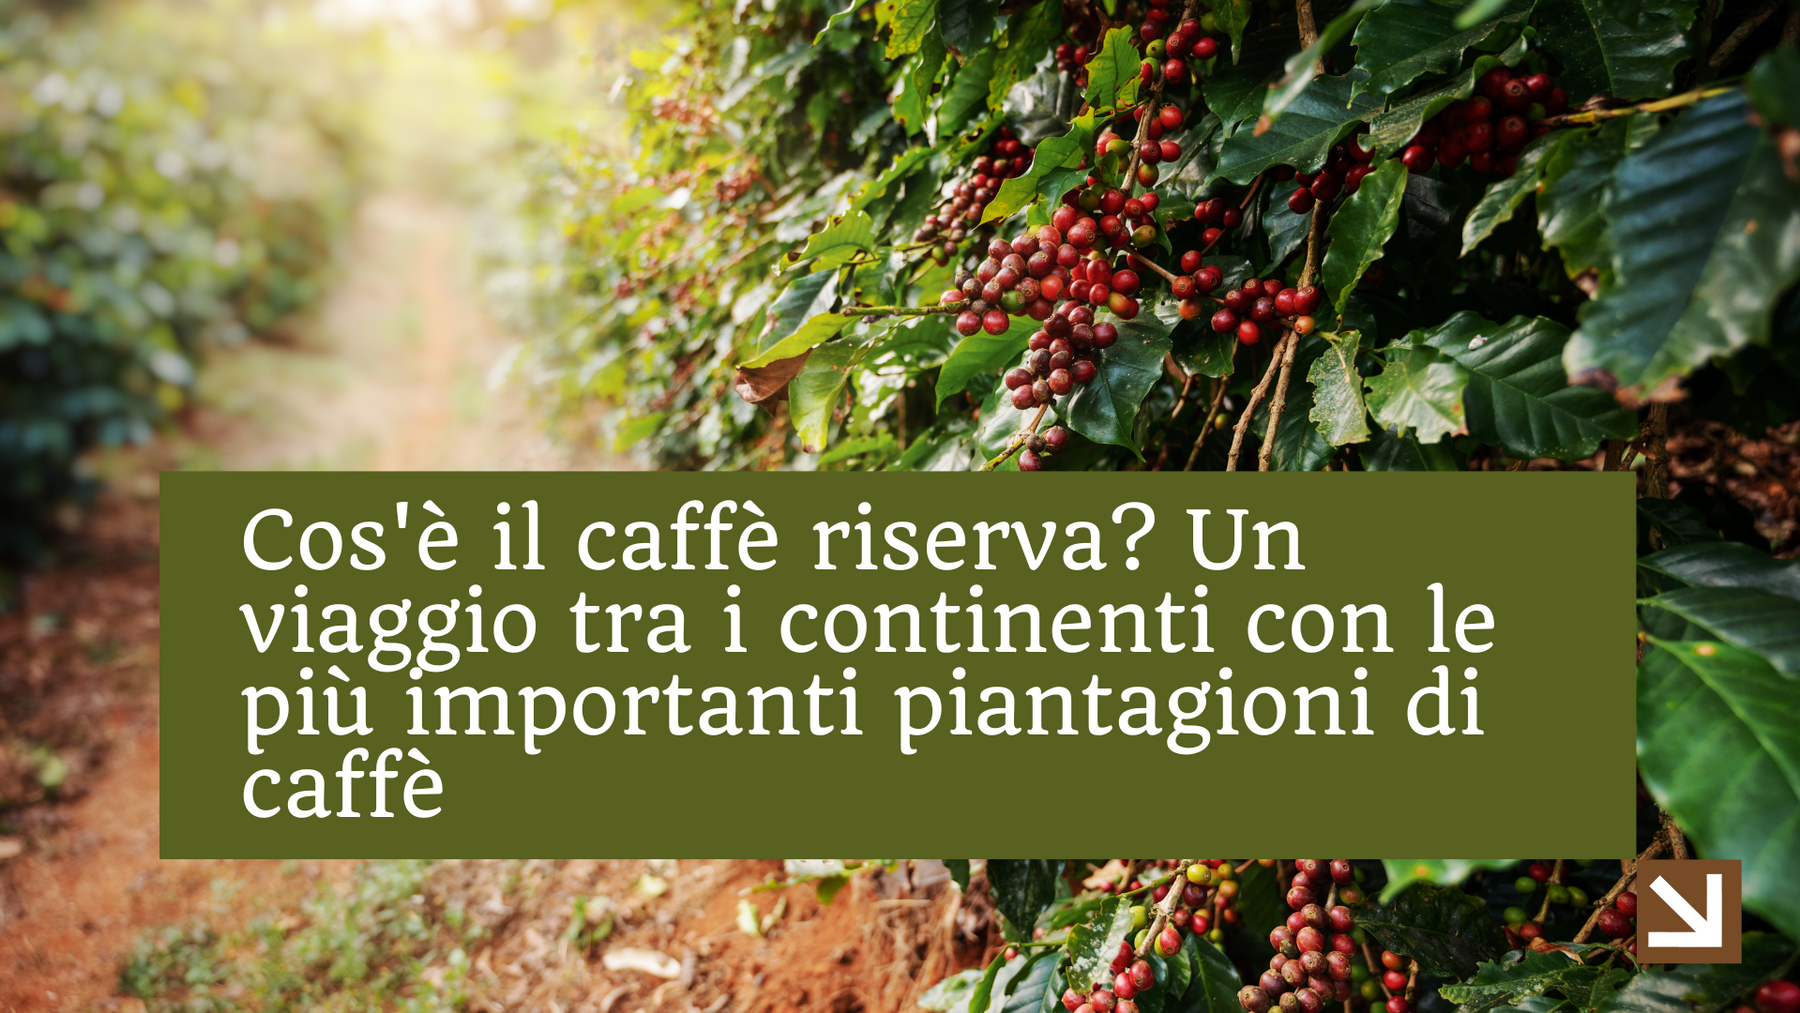 Cos'è il caffè riserva? Un viaggio tra i continenti con le più importanti piantagioni di caffè